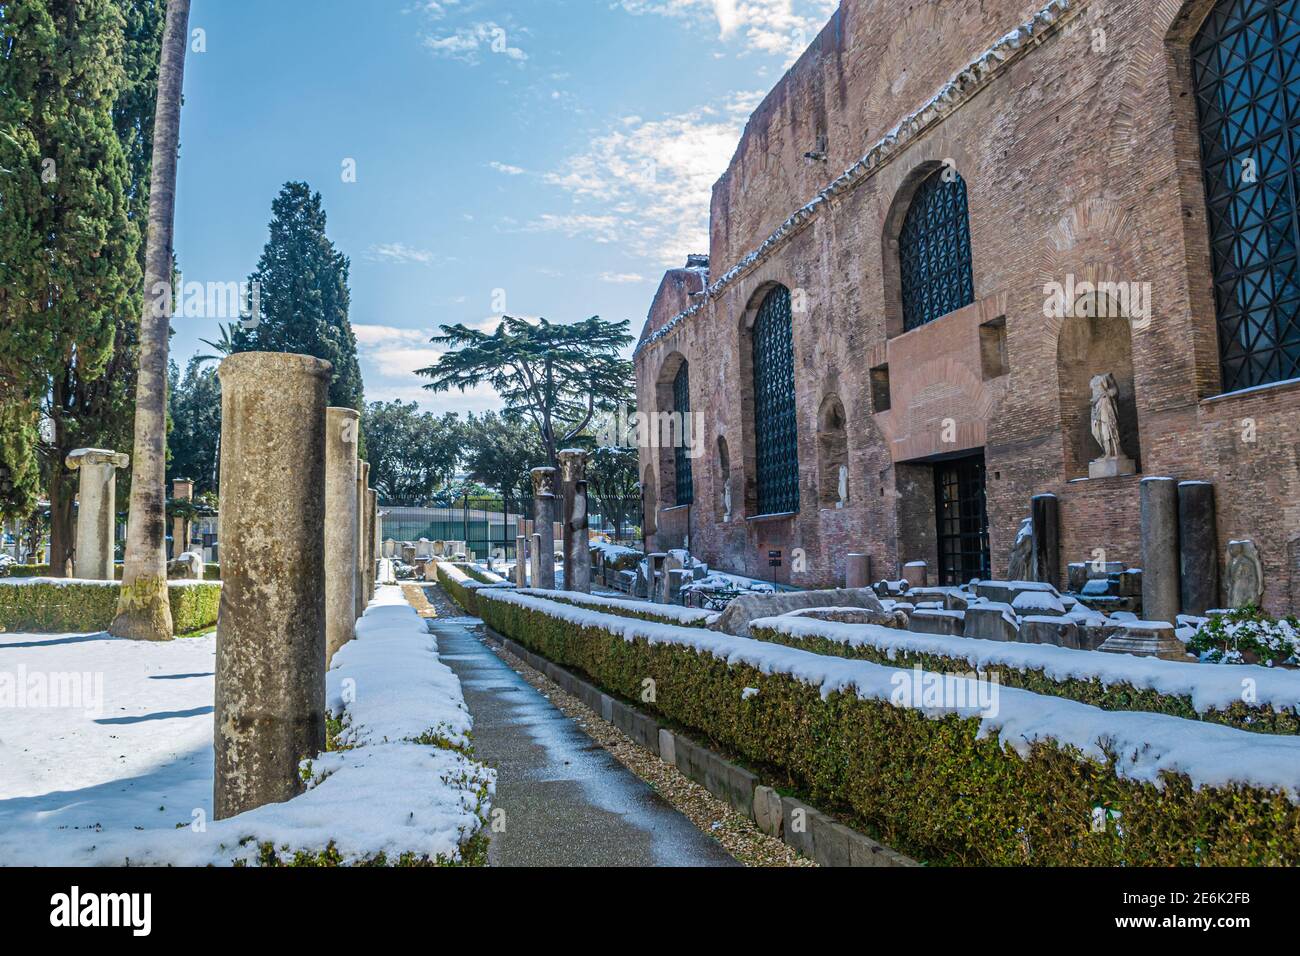 Rome, Italie - 26 février 2018 : Musée national de Rome, bains de Dioclétien sous la neige. Des chutes de neige anormales à Rome. Neige sur Rome pour la première fois Banque D'Images